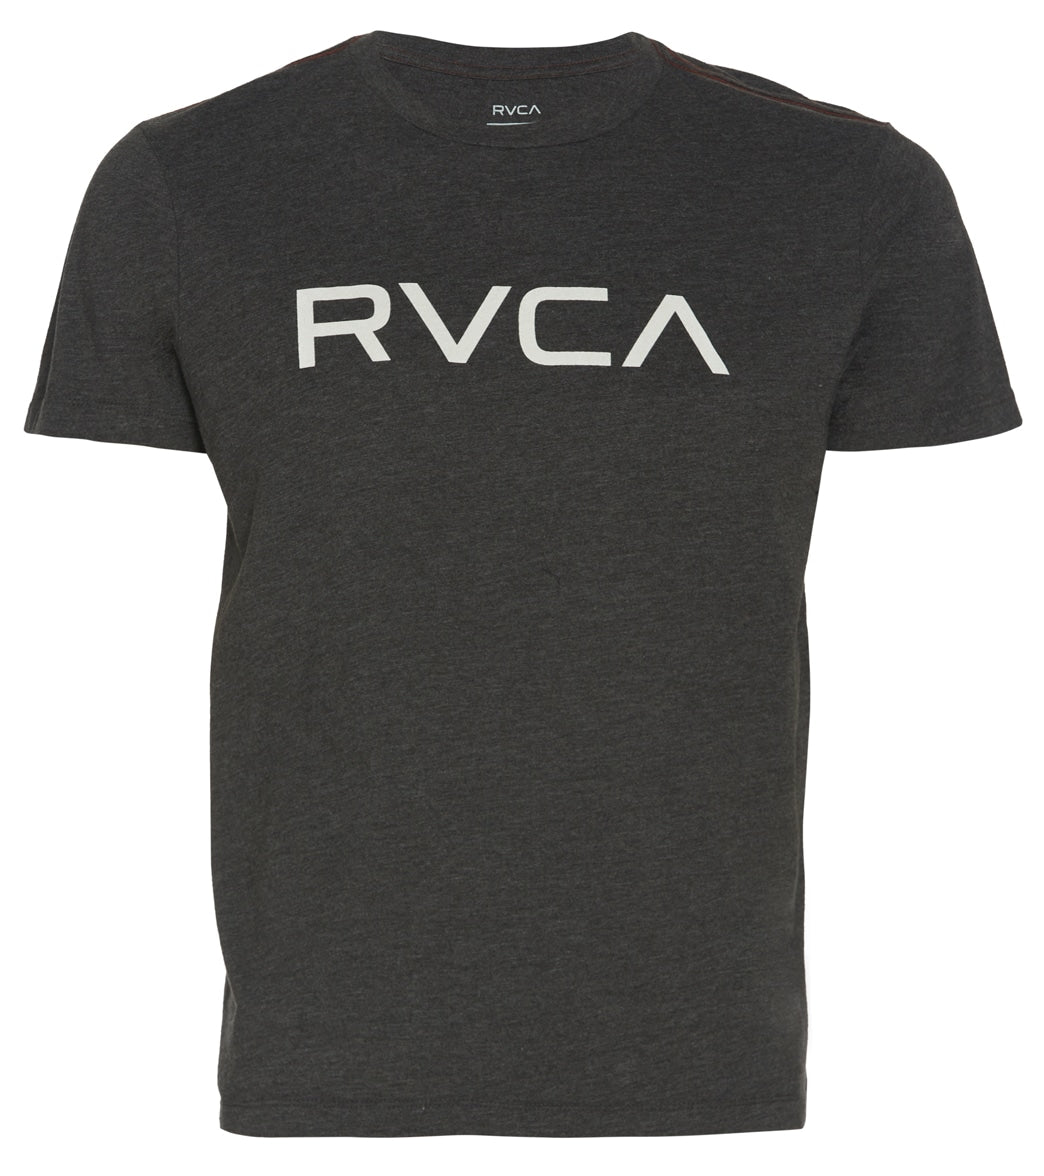 Mens RVCA Big Rvca Short Sleeve Tee